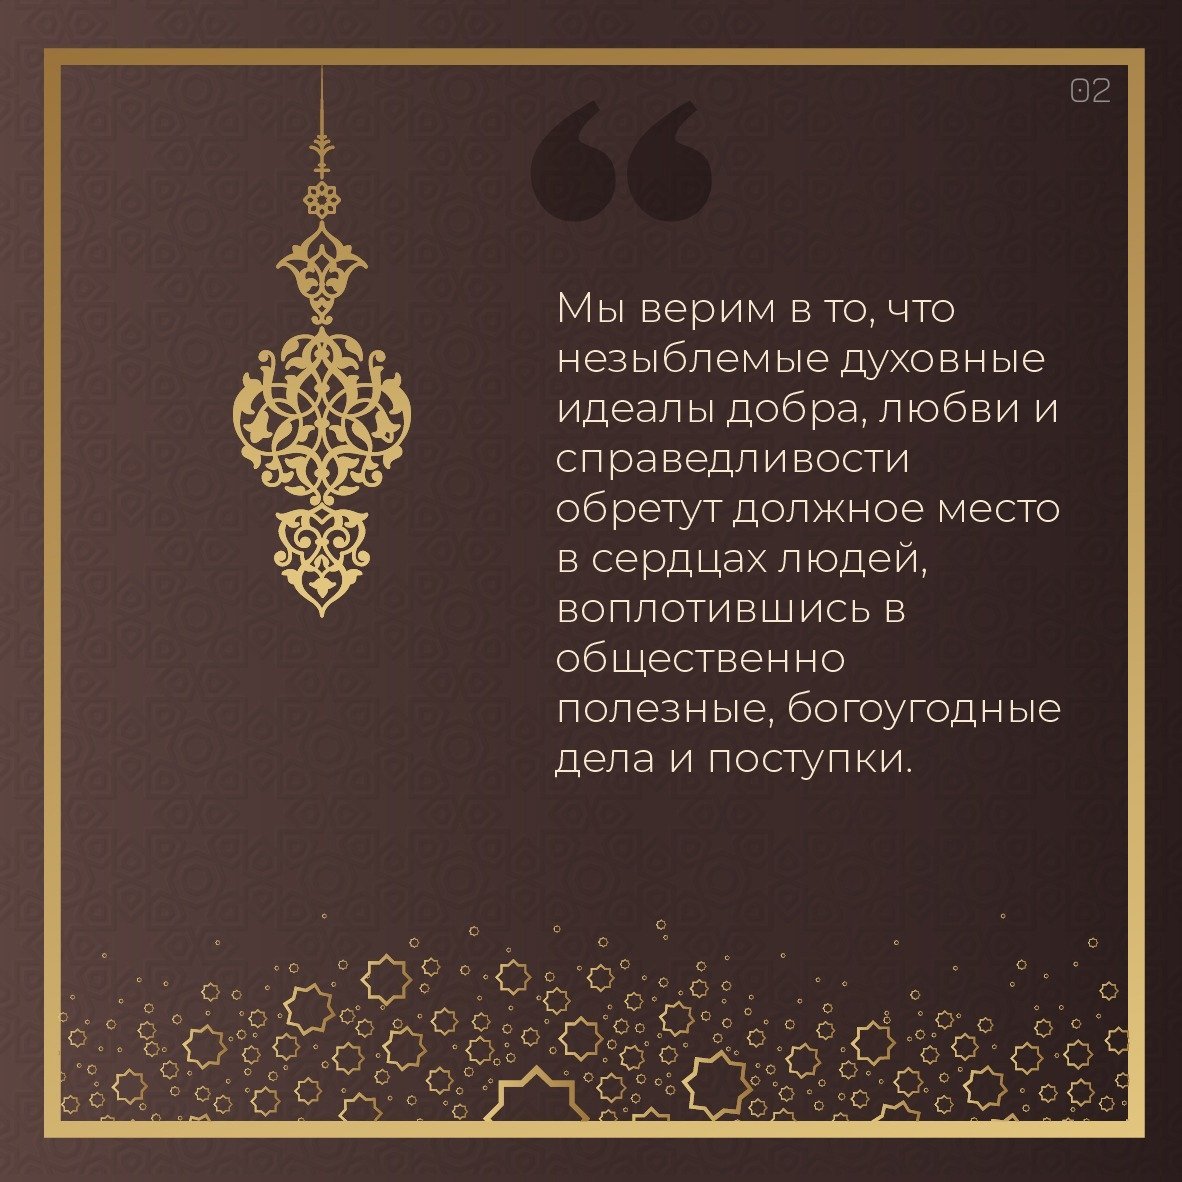 Мусульманские поздравления с днем рождения сестре 💐 – бесплатные пожелания на Pozdravim